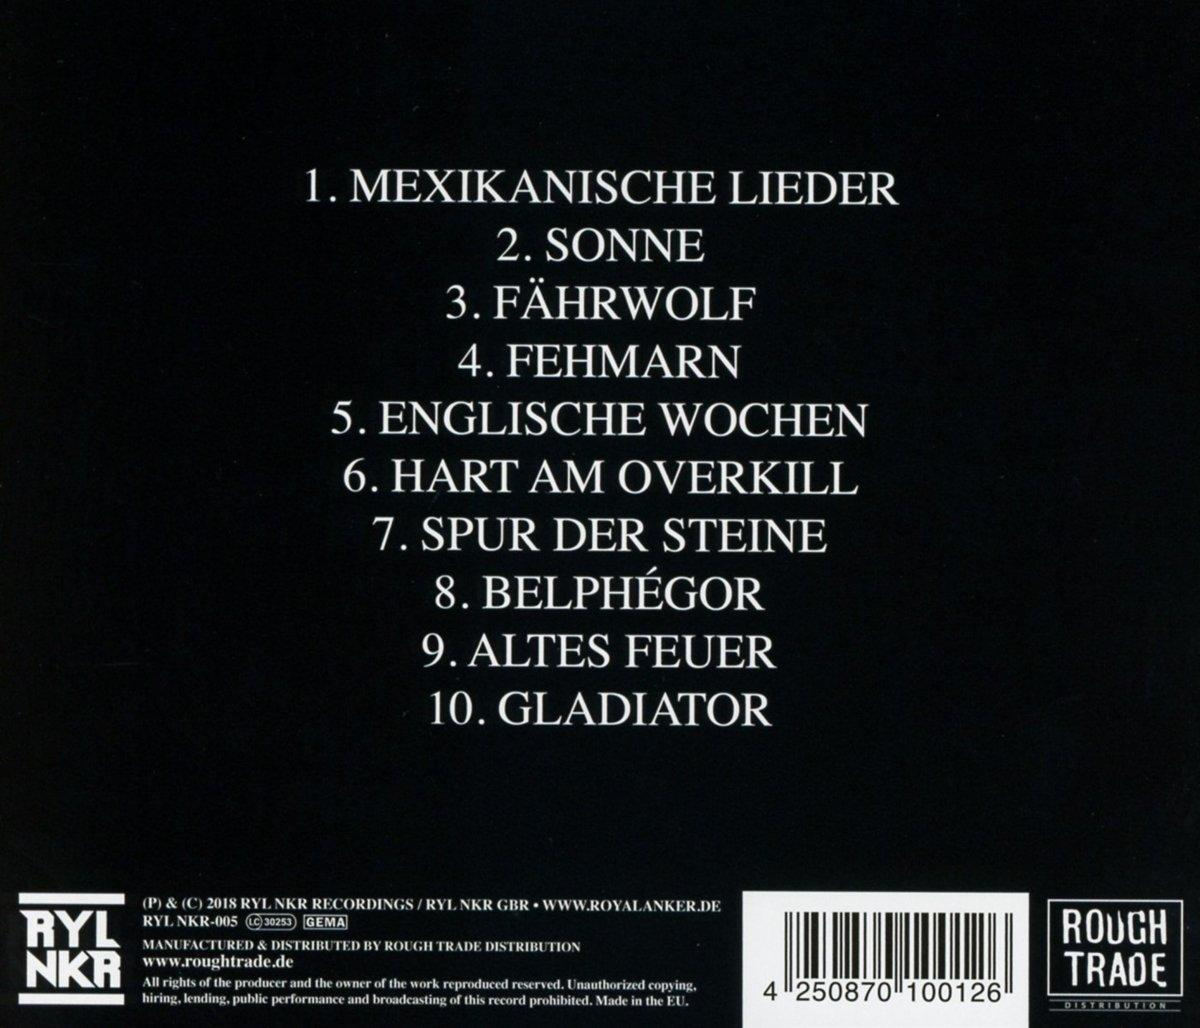 - Cohen (CD) Erik III -